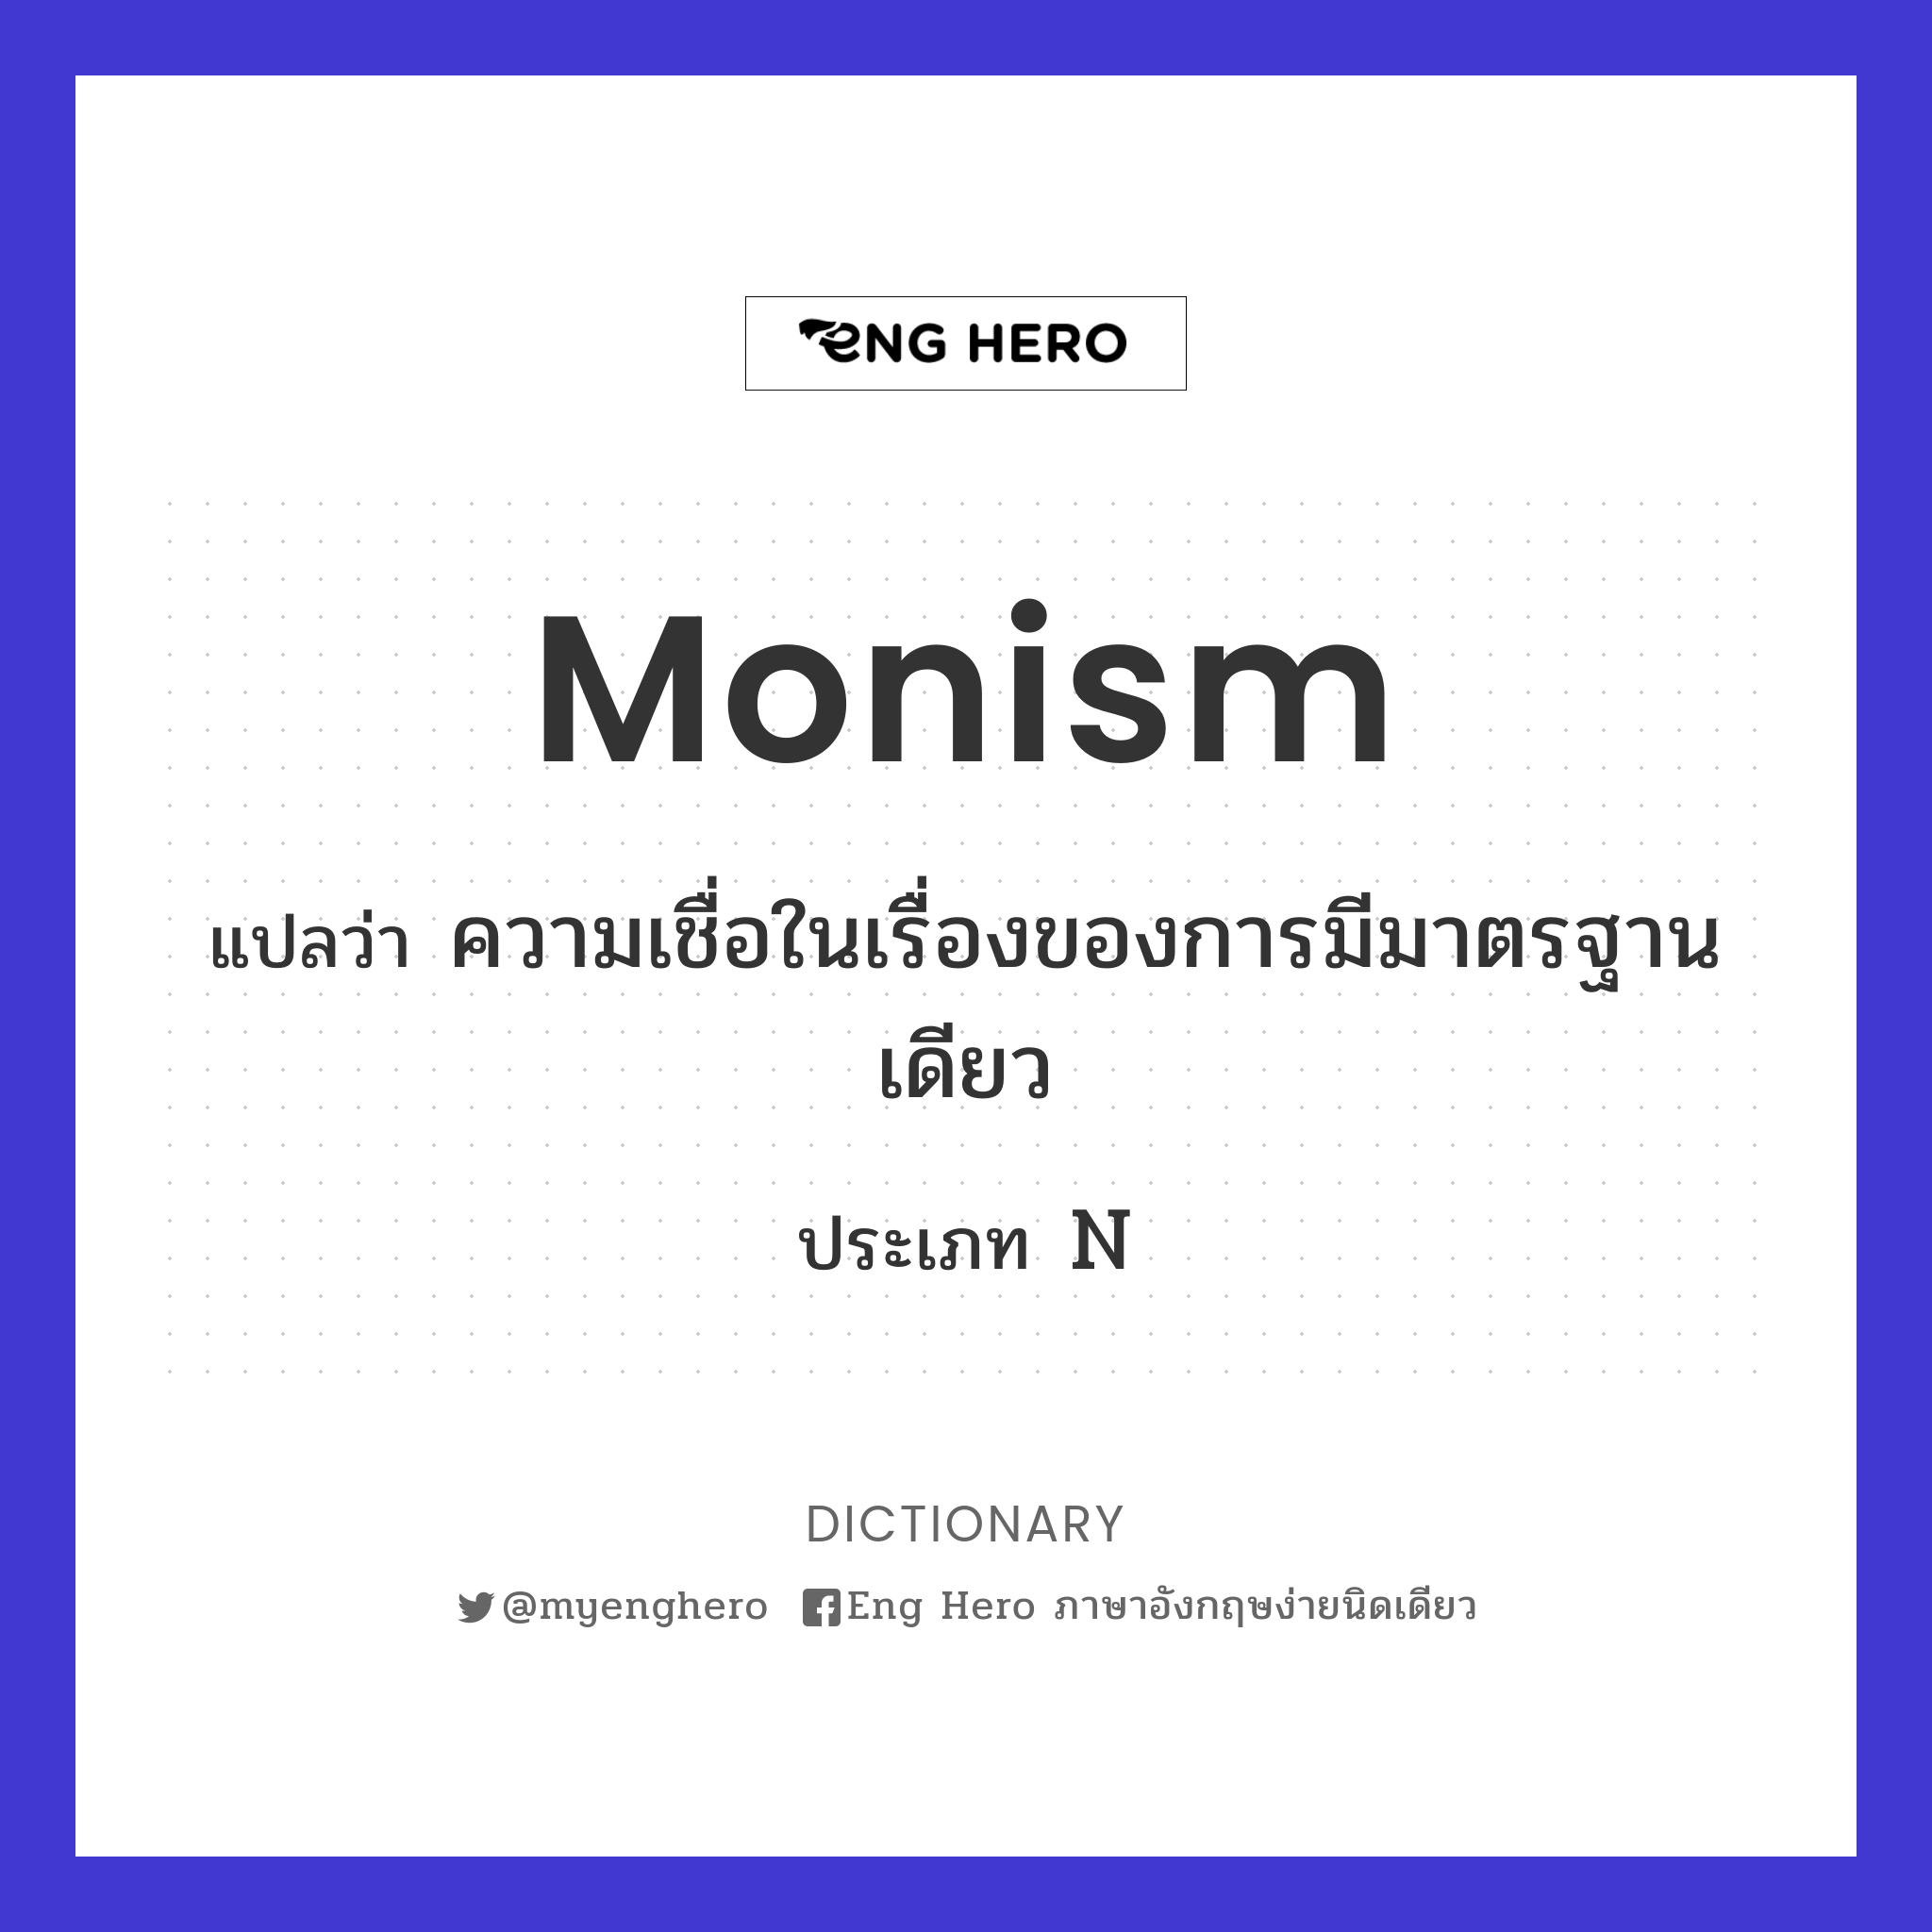 monism